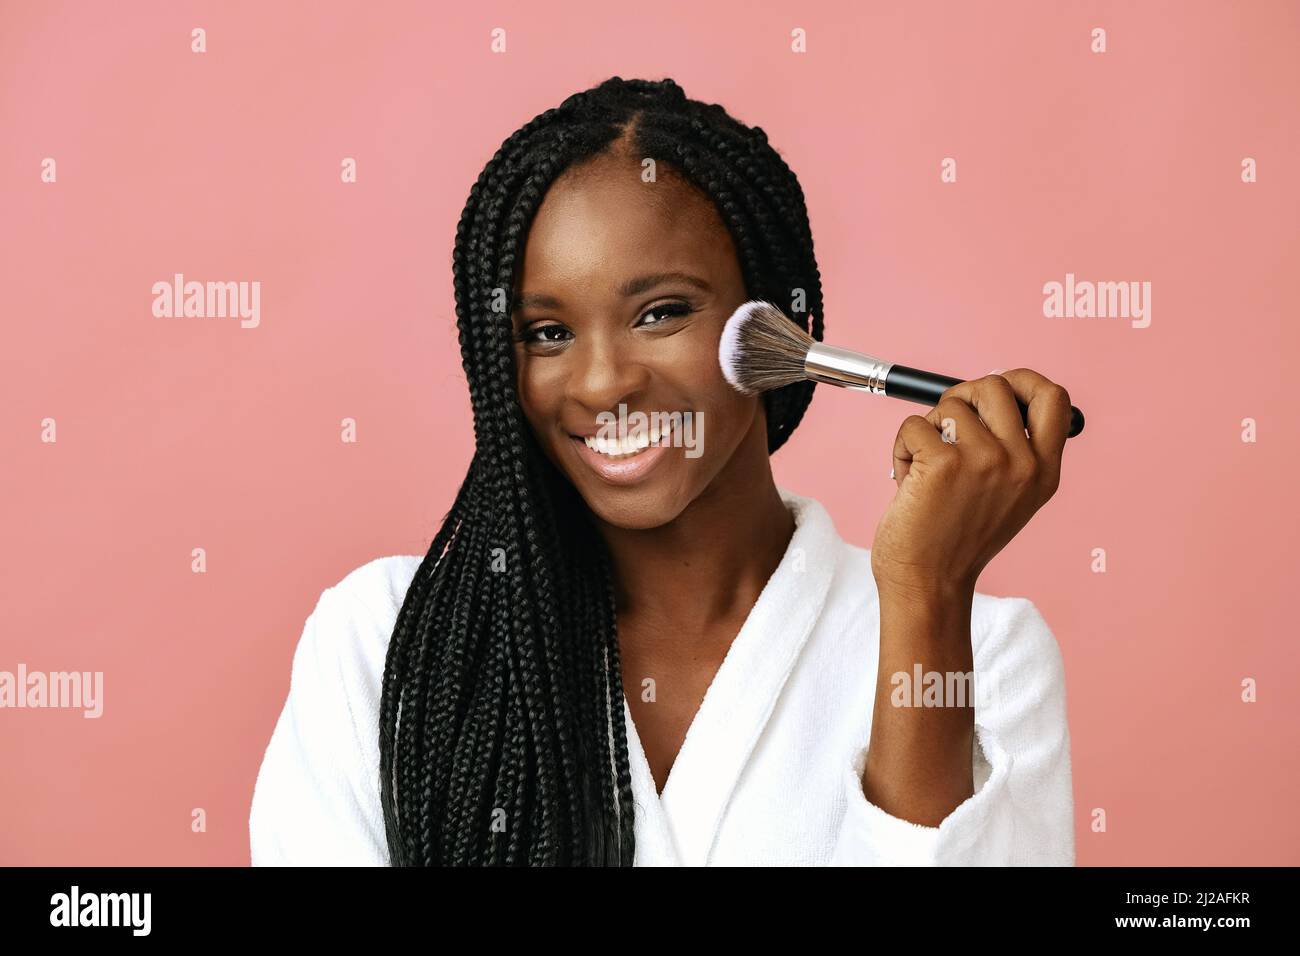 hermosa mujer afroamericana sonriendo aplicando rubor de piel con cepillo de maquillaje sobre fondo rosa, sonriente y feliz Foto de stock